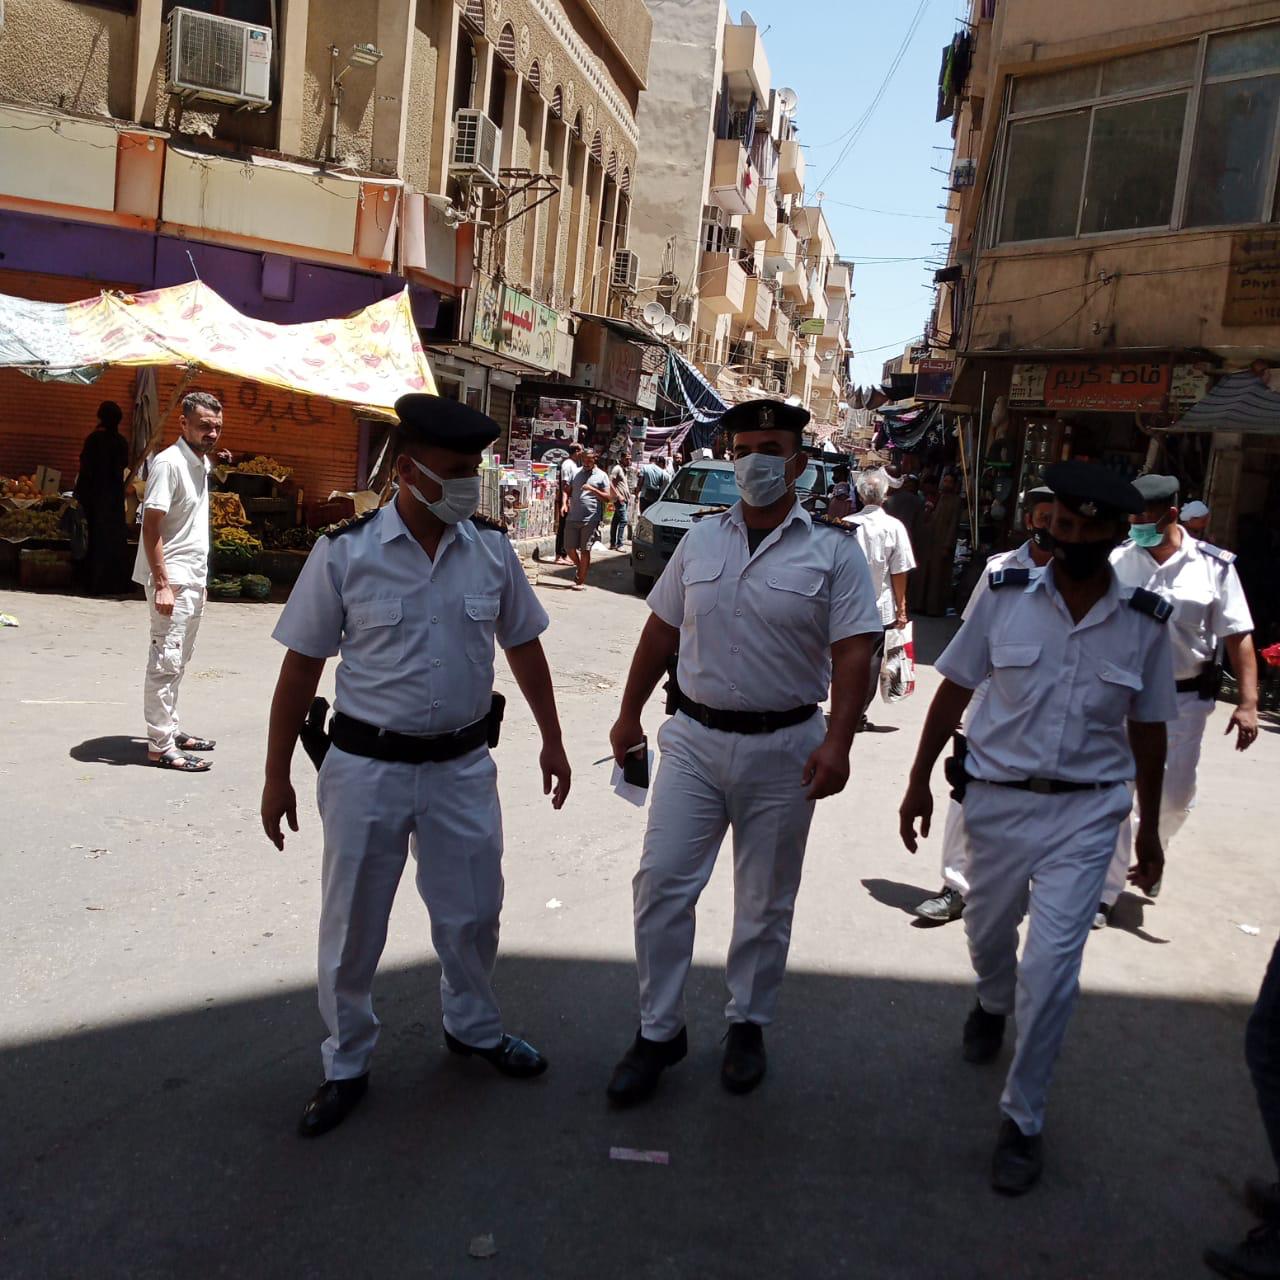 شرطة مرافق الأقصر تحرر 120 محضرا فى حملات بشوارع والمقاهي 3